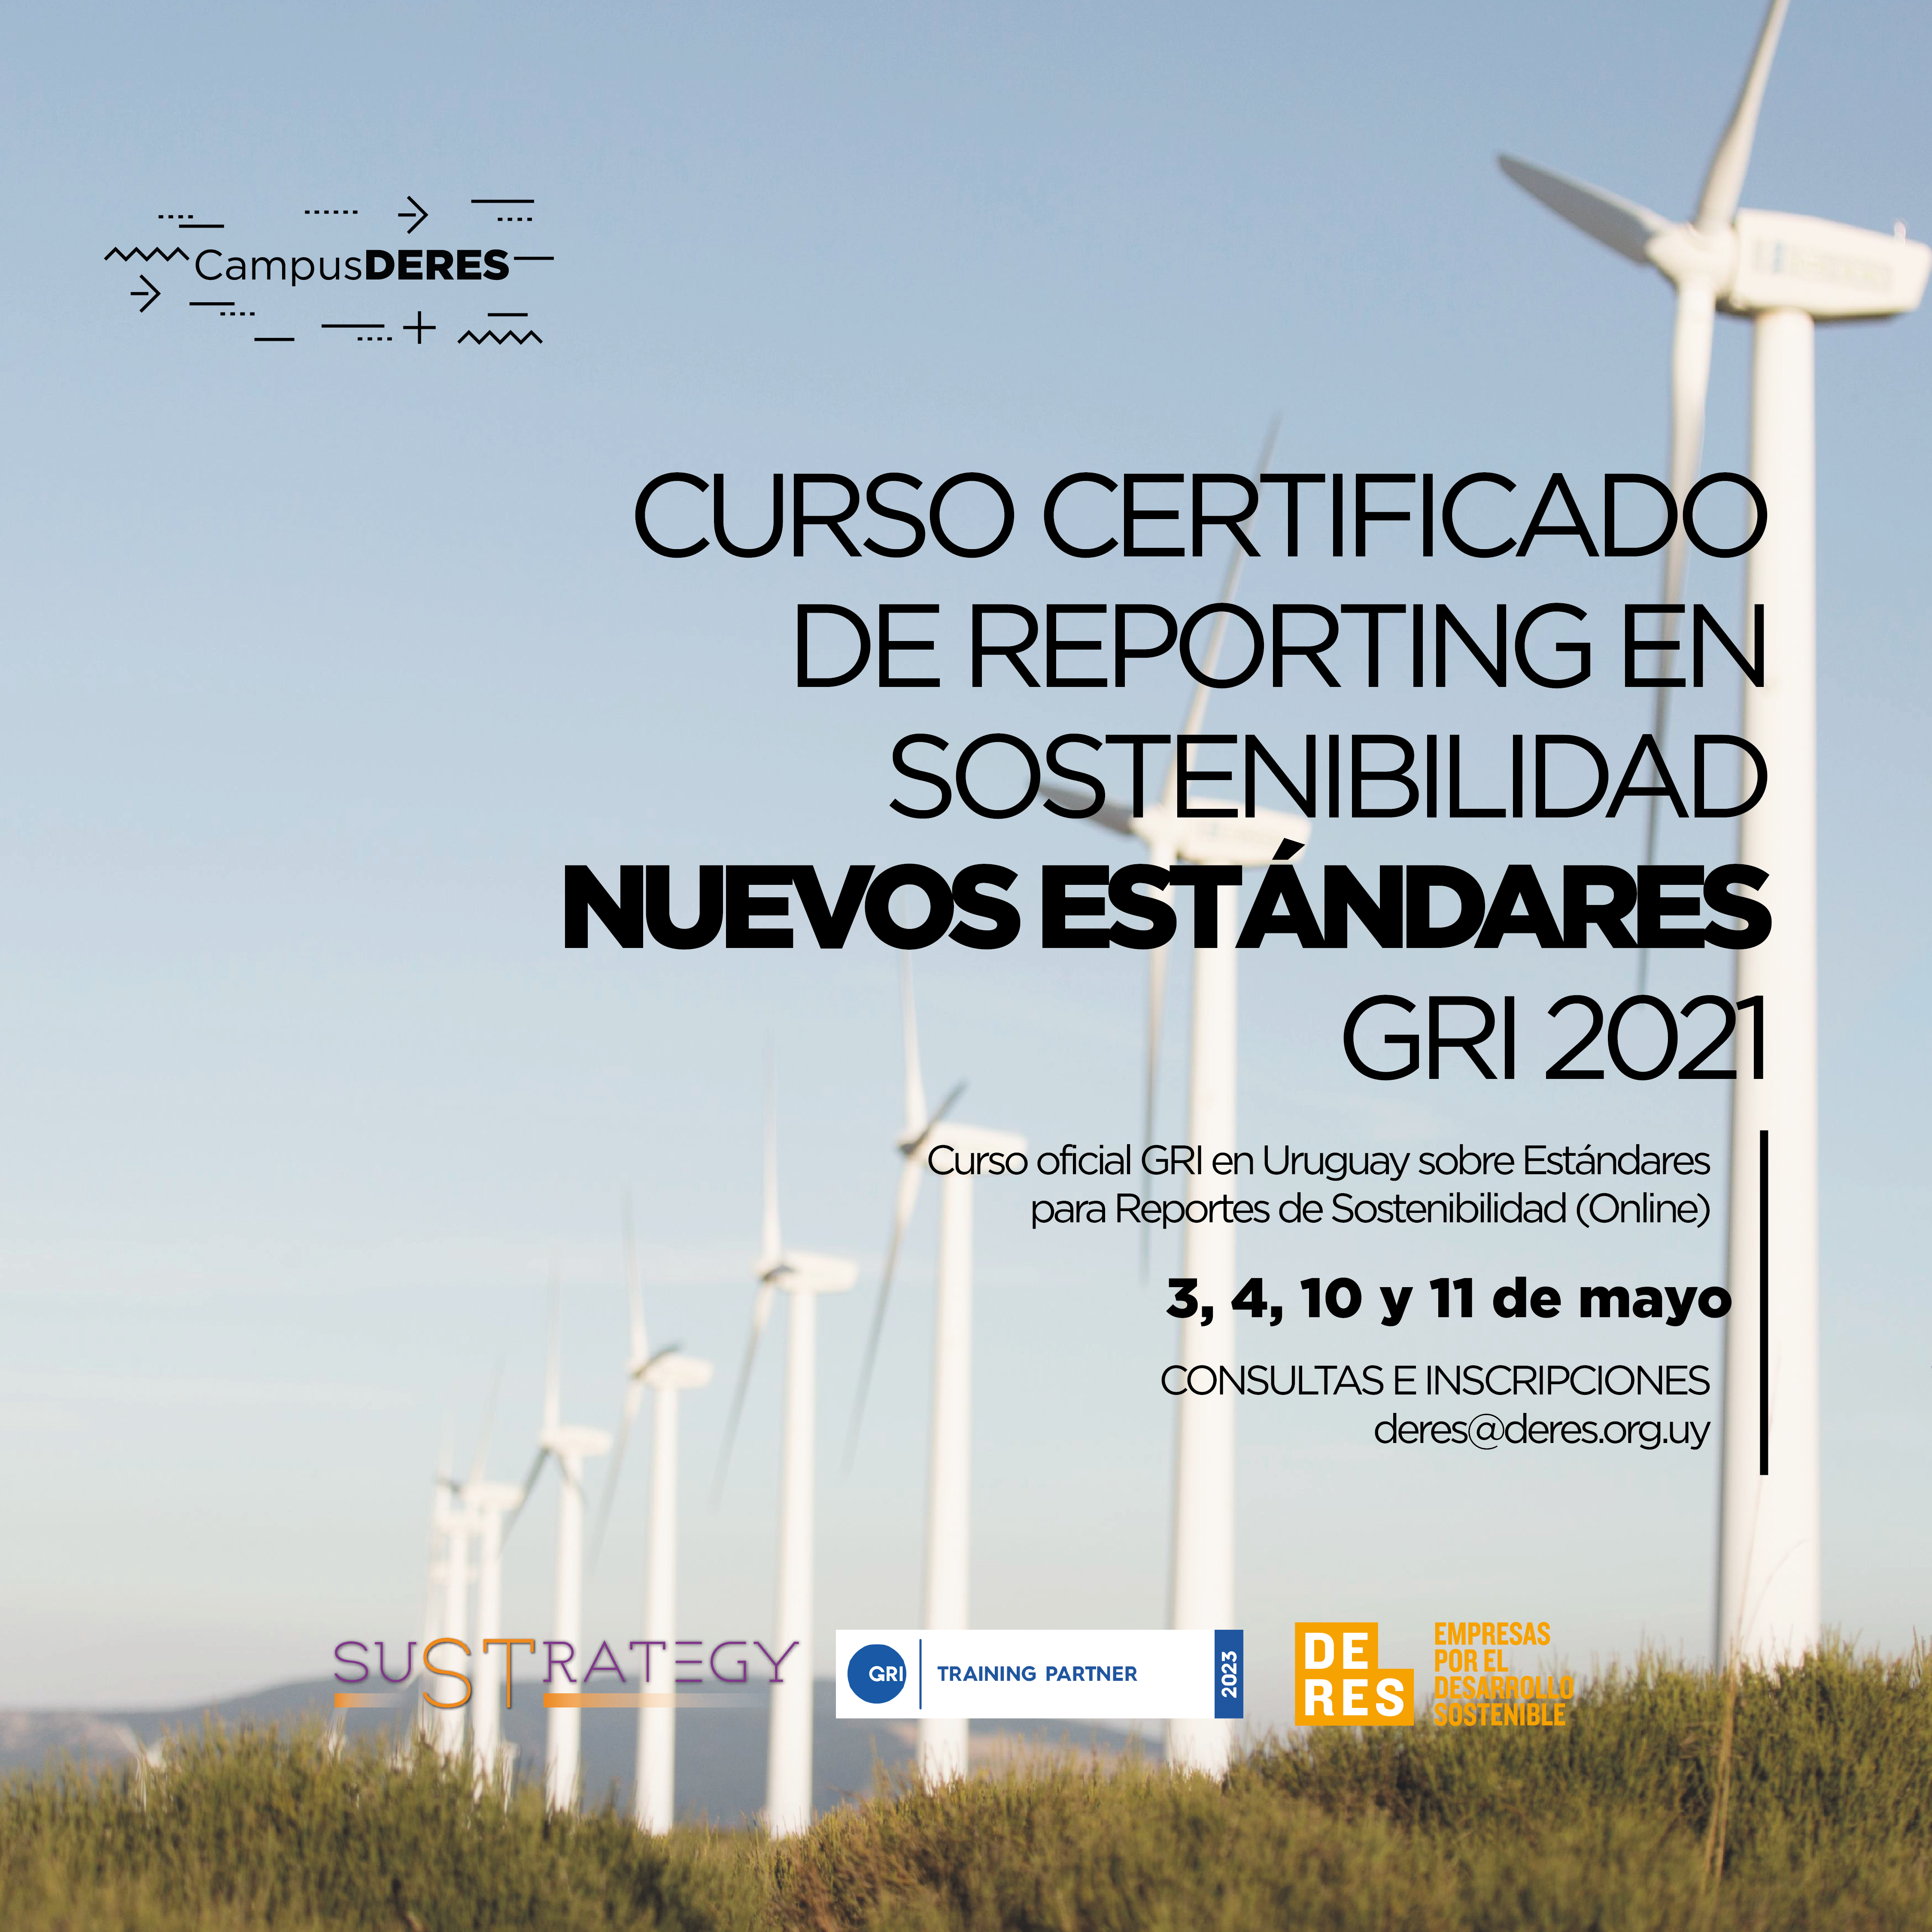 #CampusDERES | Curso Certificado de Reporting en Sostenibilidad